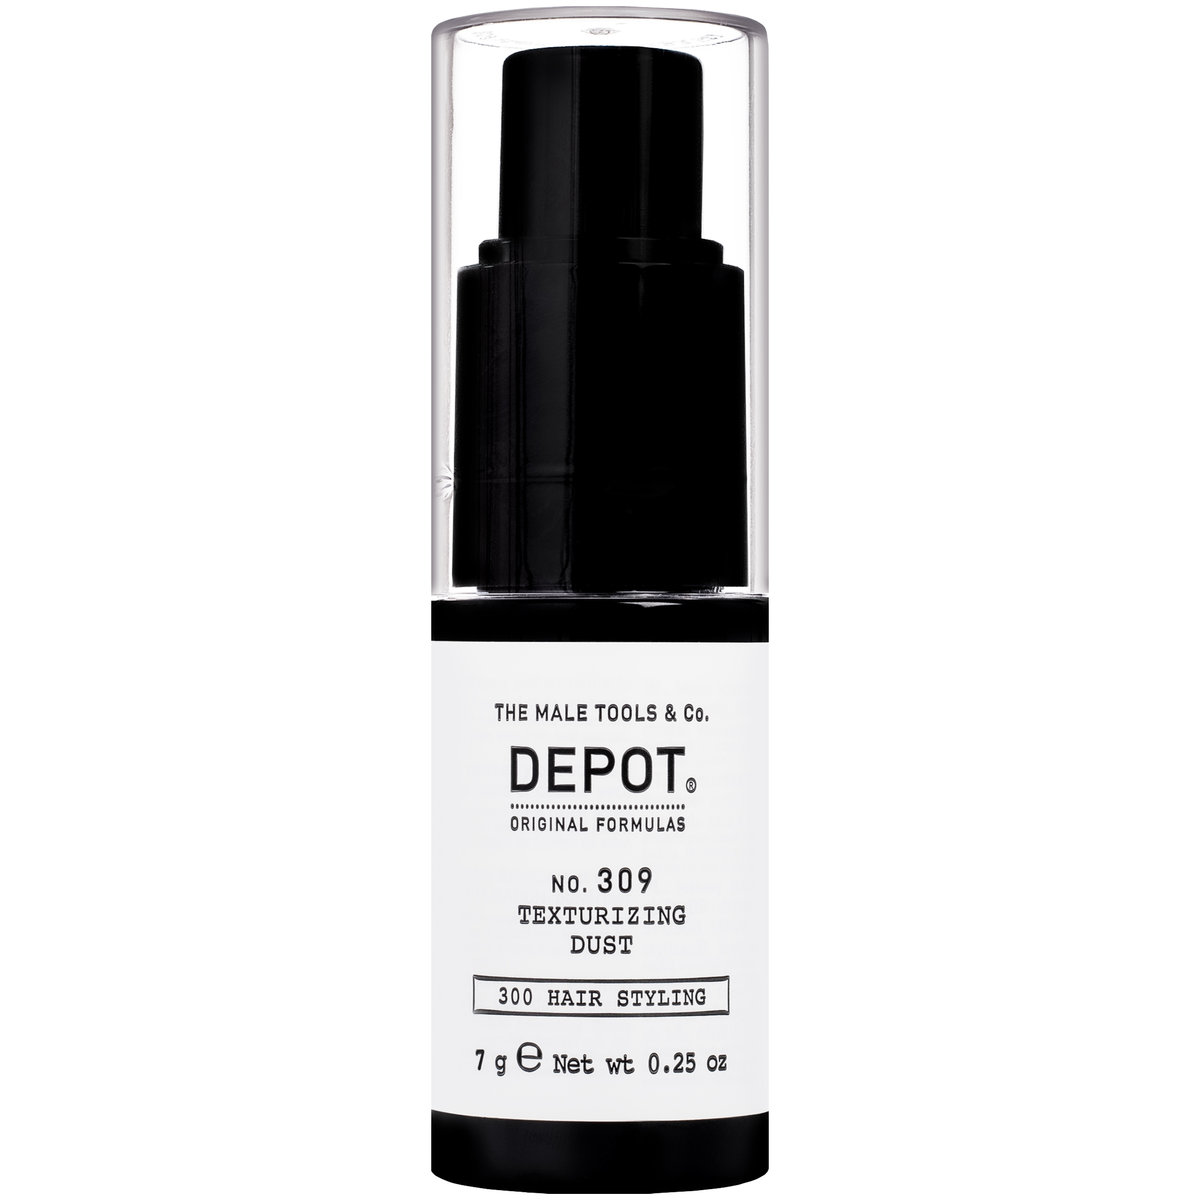 Depot DEPOT 309 texturizing dust 7g